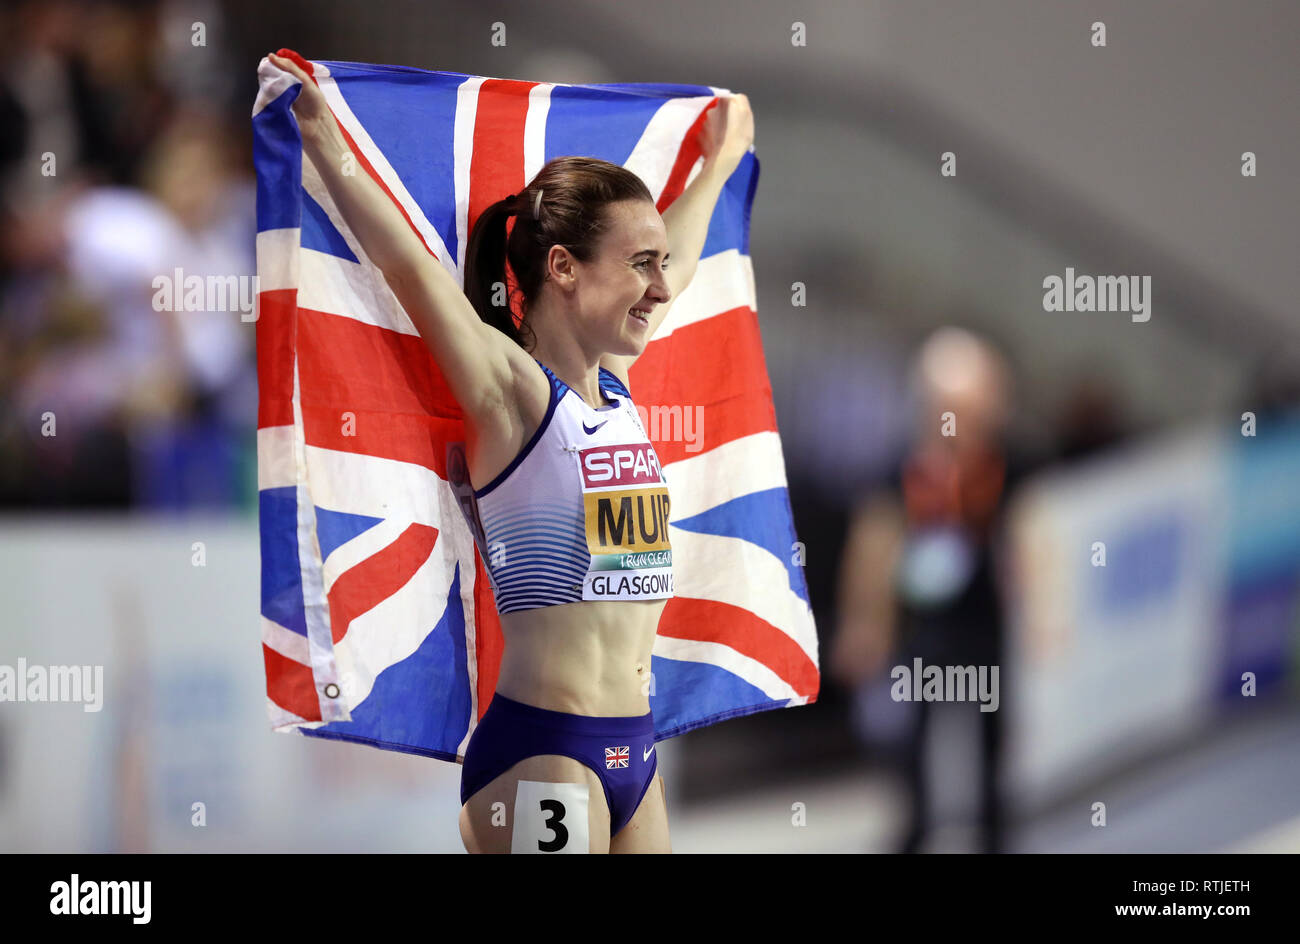 Grande-bretagne Laura Muir célèbre remportant la médaille d'or en finale du 3000m au cours de la première journée de l'Indoor d'athlétisme à l'Emirates Arena, Glasgow. Banque D'Images